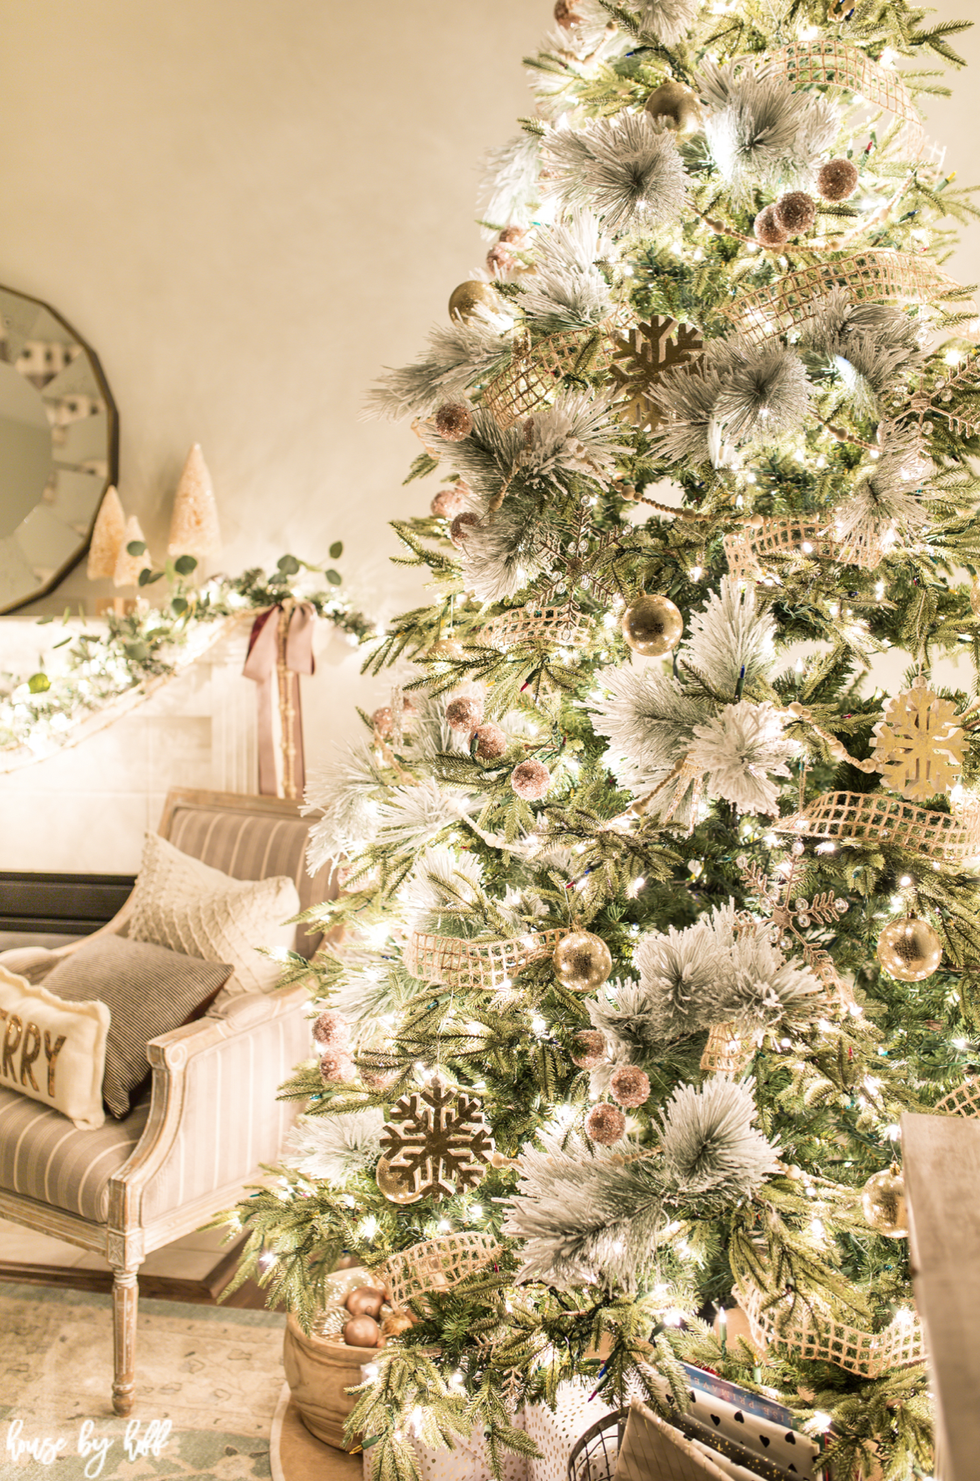 Pom Pom Christmas Trees - DIY Crafts - OkieGirlBling'n'Things